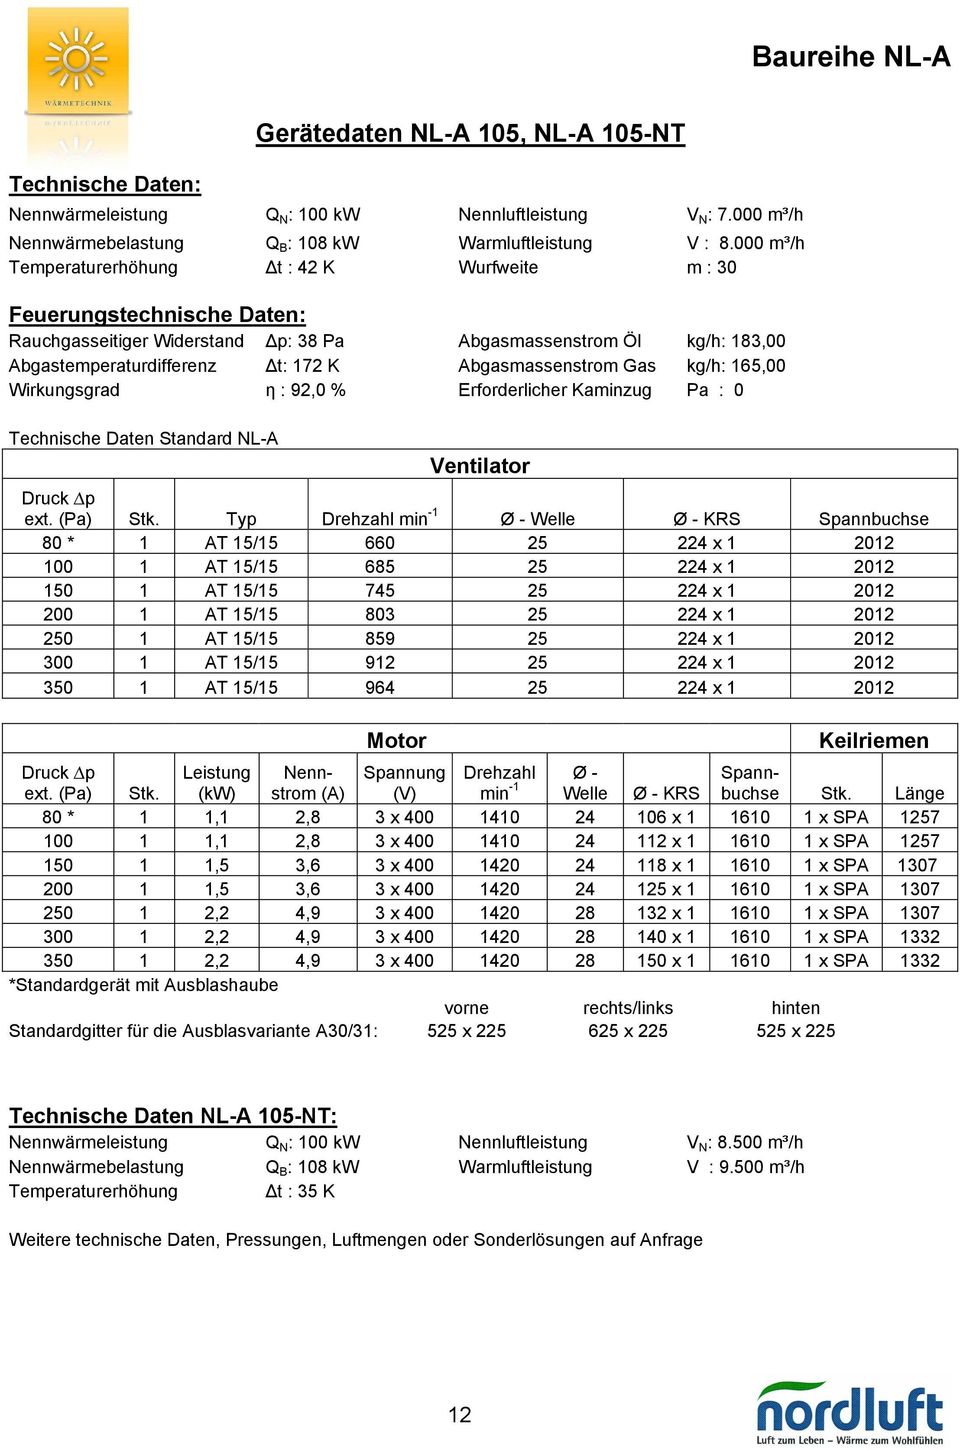 Abgasmassenstrom Gas kg/h: 165,00 Wirkungsgrad η : 92,0 % Erforderlicher Kaminzug Pa : 0 Technische Daten Standard NL-A Ventilator ext. (Pa) Stk.